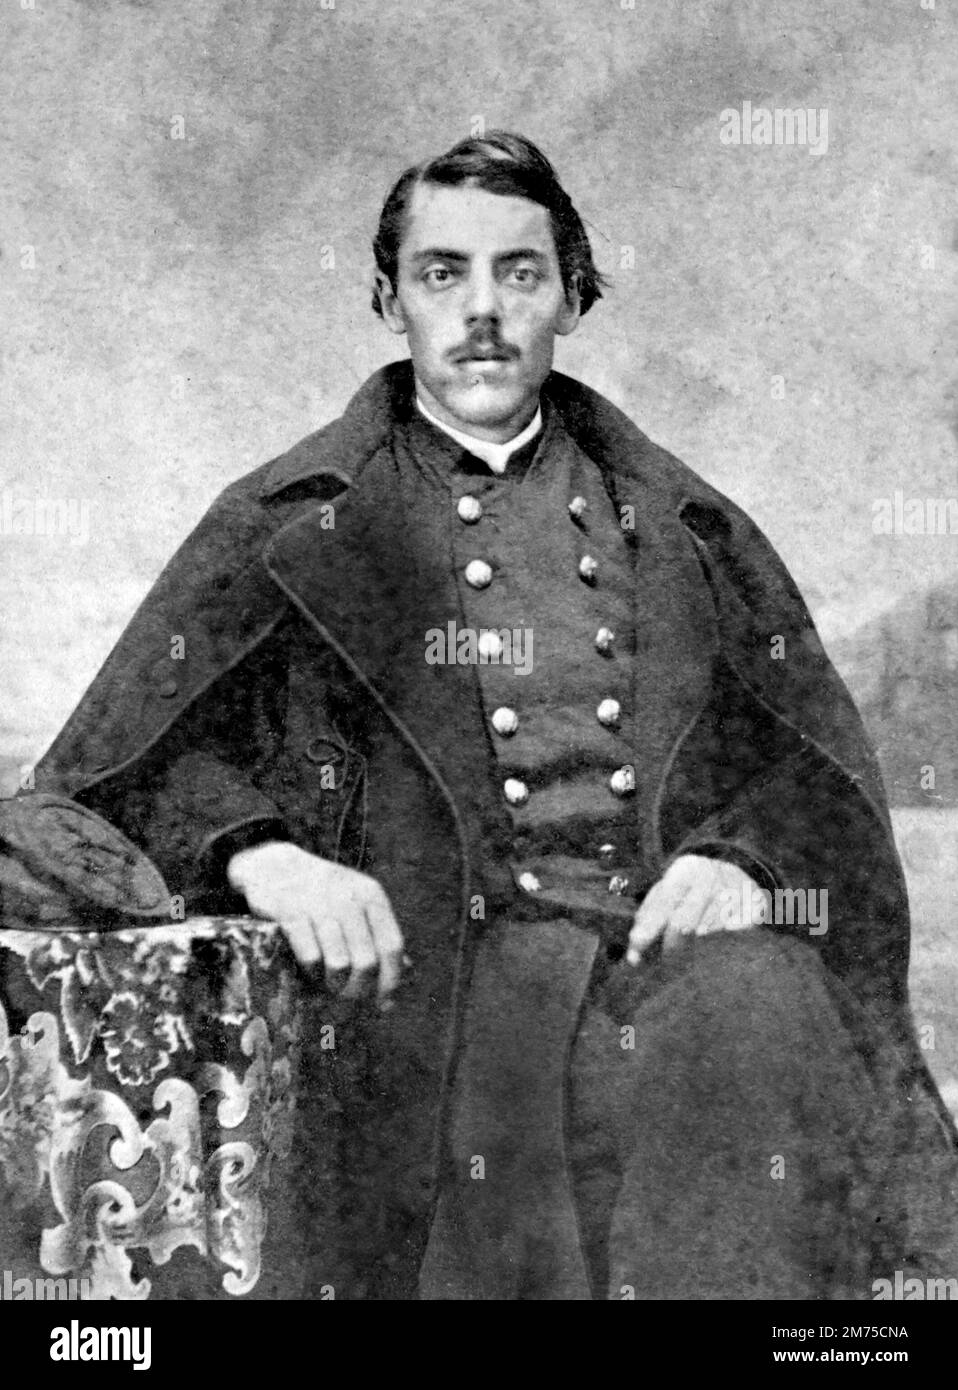 Eli Lilly. Portrait des Soldaten, Chemikers und Geschäftsmanns Eli Lilly (1838-1898) als Major der Union Army während des Amerikanischen Bürgerkriegs, c. 1861-65 Stockfoto